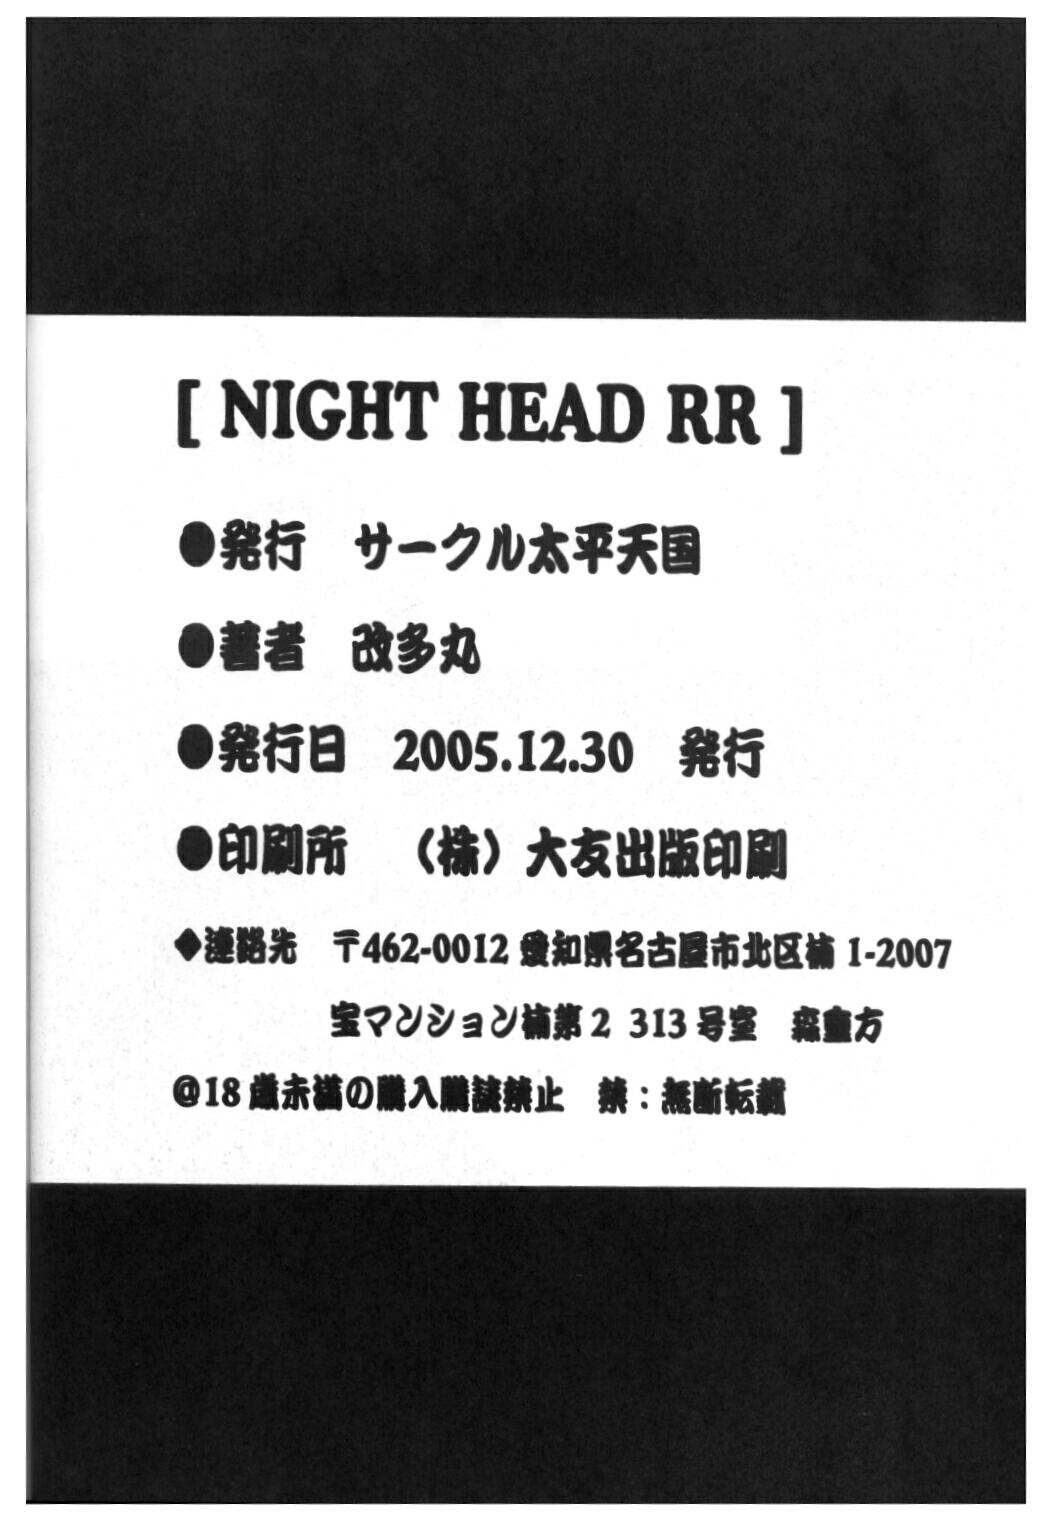 Night Head RR - Rumble Roses 